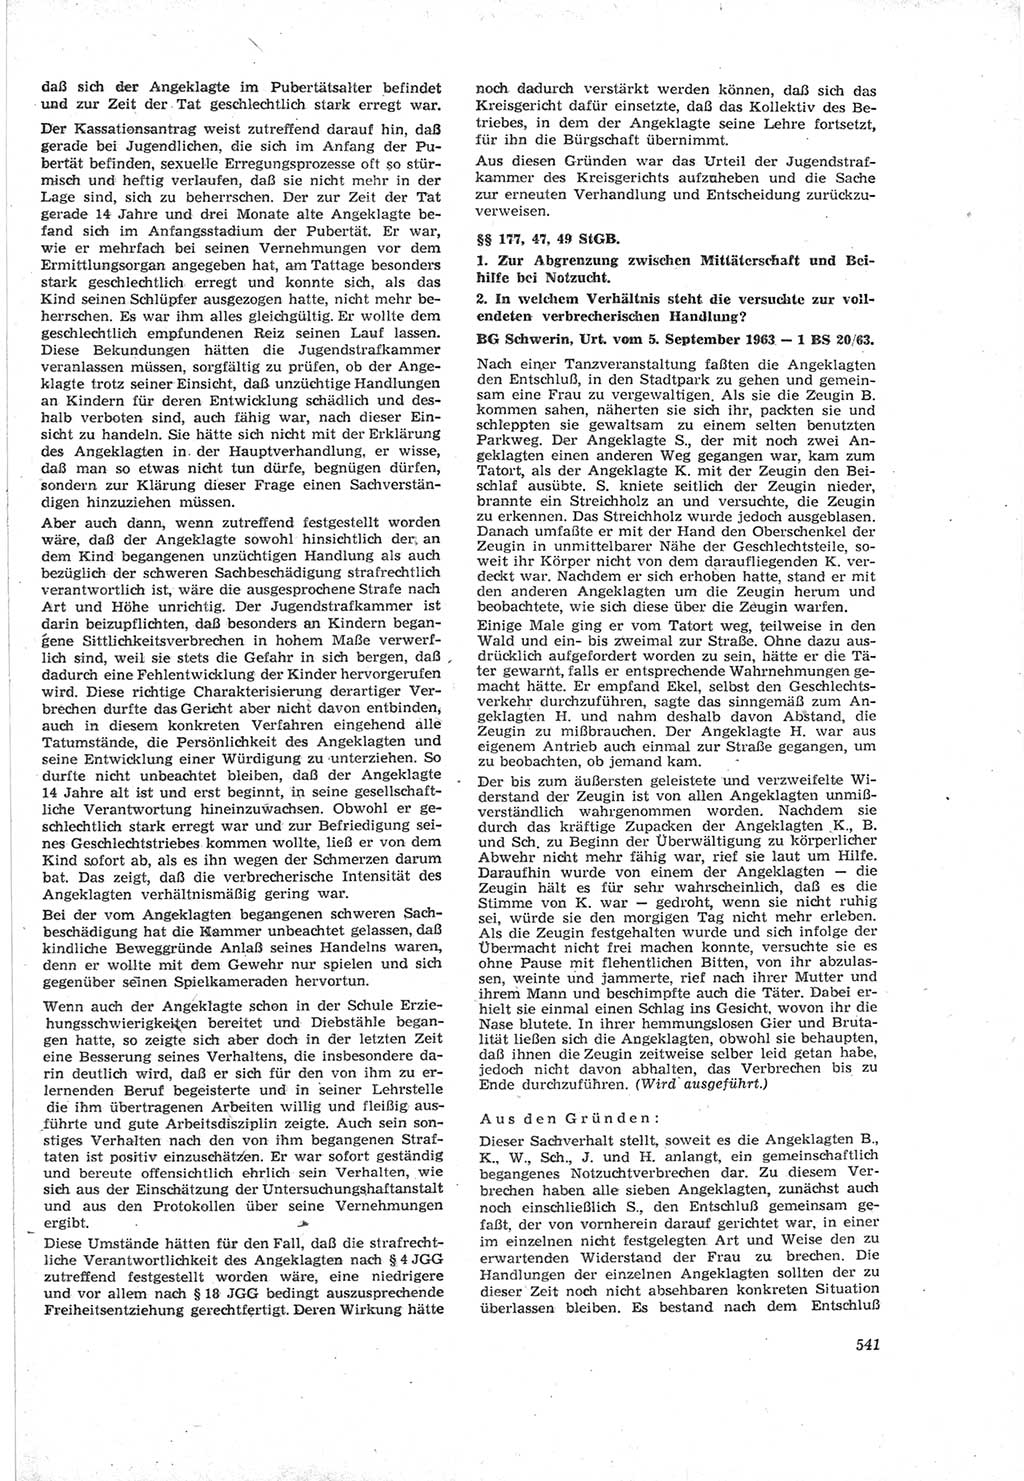 Neue Justiz (NJ), Zeitschrift für Recht und Rechtswissenschaft [Deutsche Demokratische Republik (DDR)], 18. Jahrgang 1964, Seite 541 (NJ DDR 1964, S. 541)